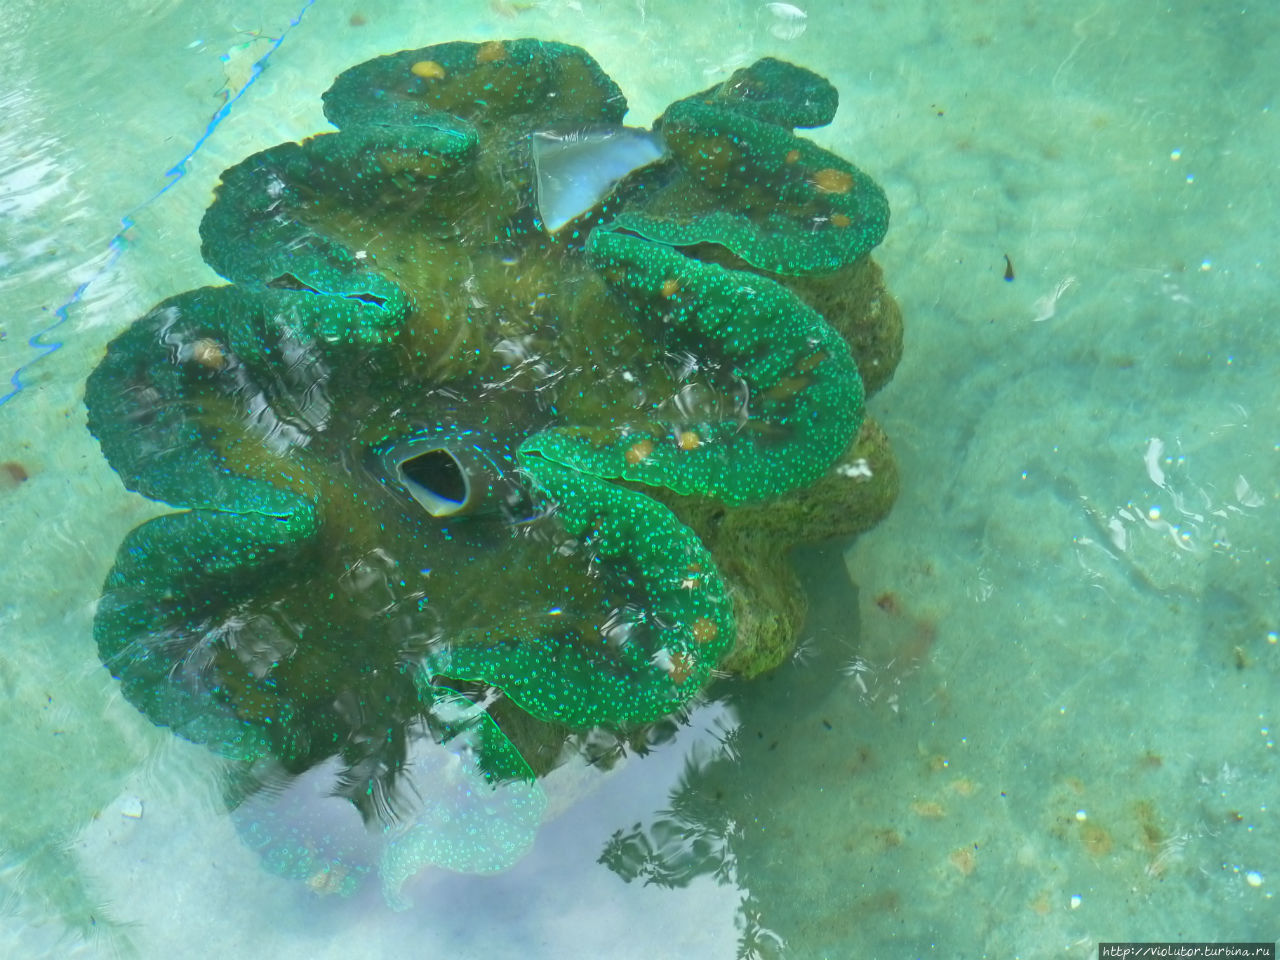 Камигин. Ферма гигантских моллюсков Остров Камигин, Филиппины